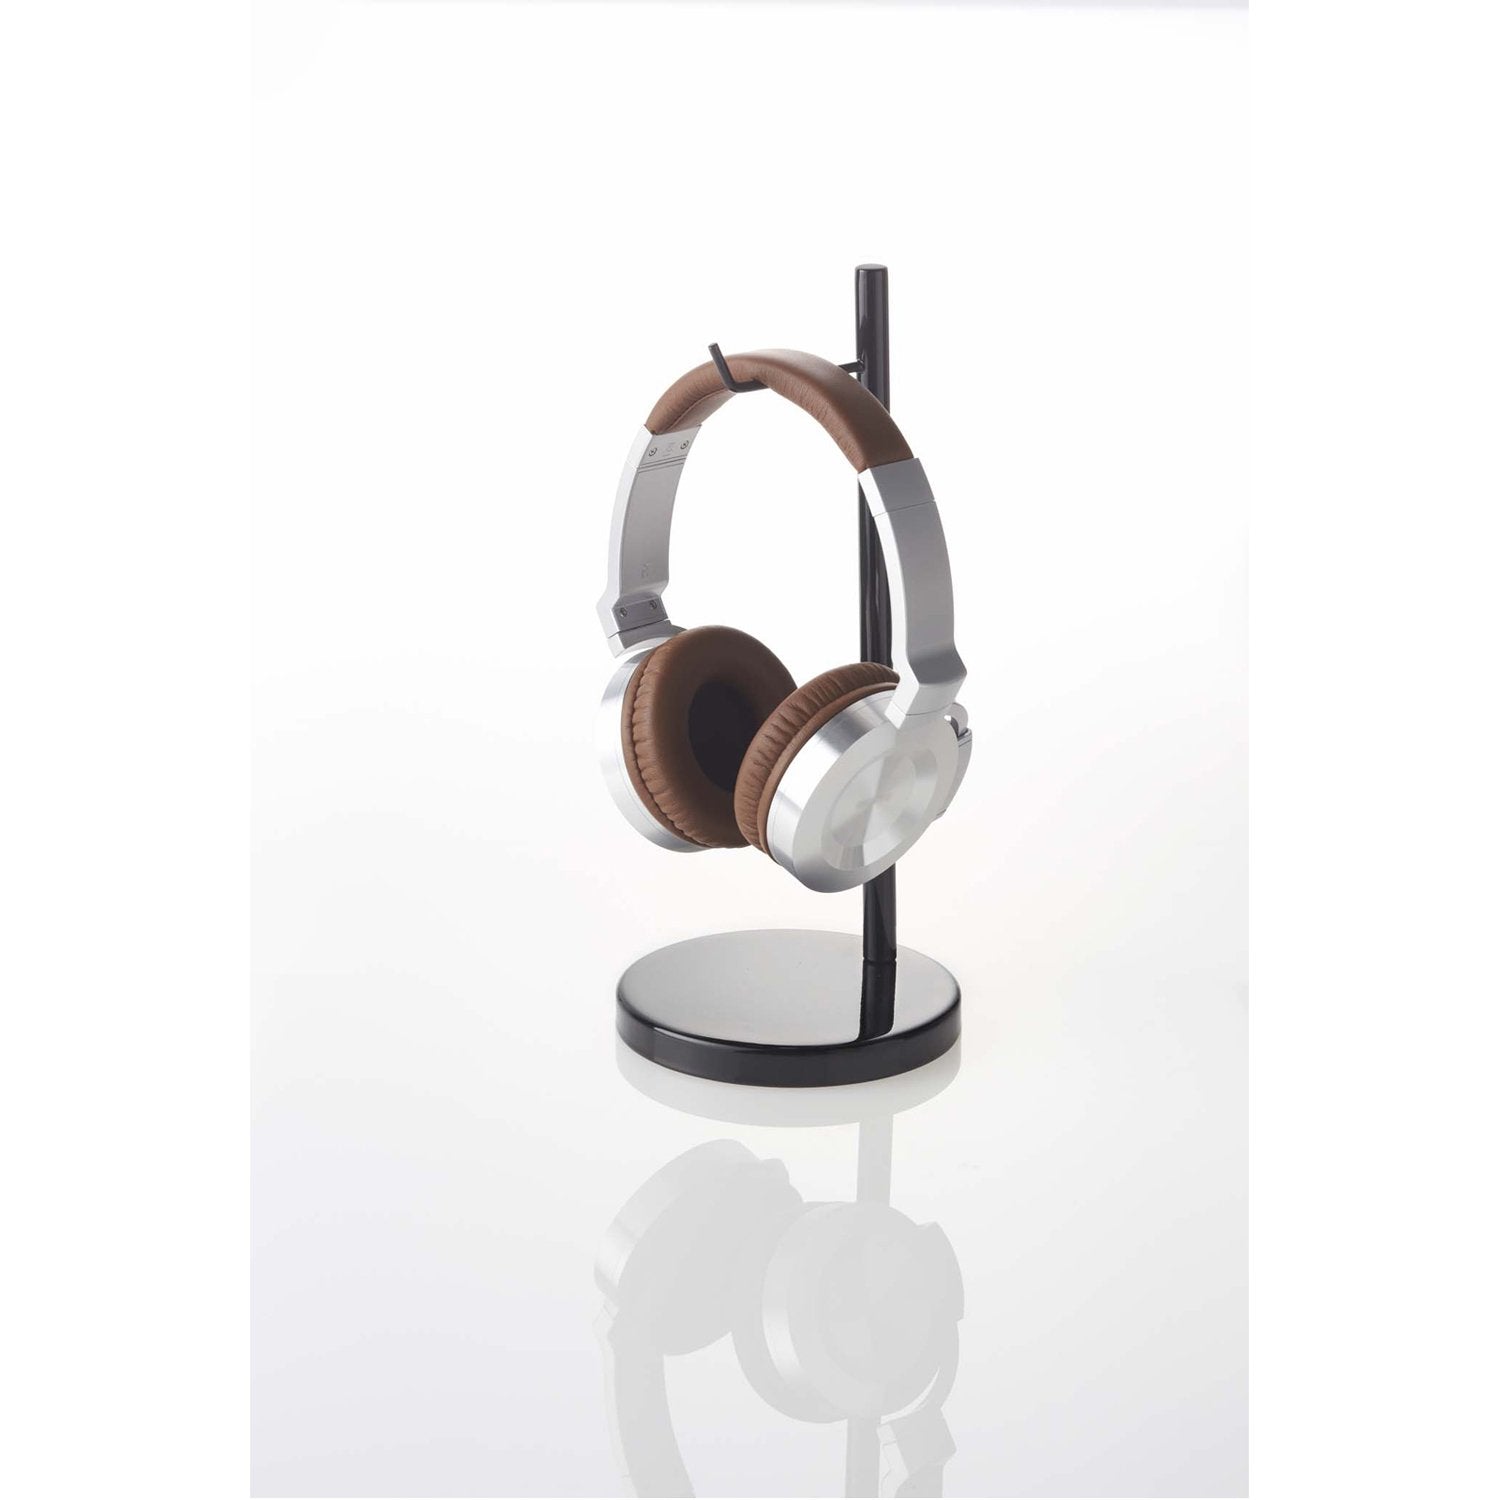 Gorilla Wooden Headset Stand